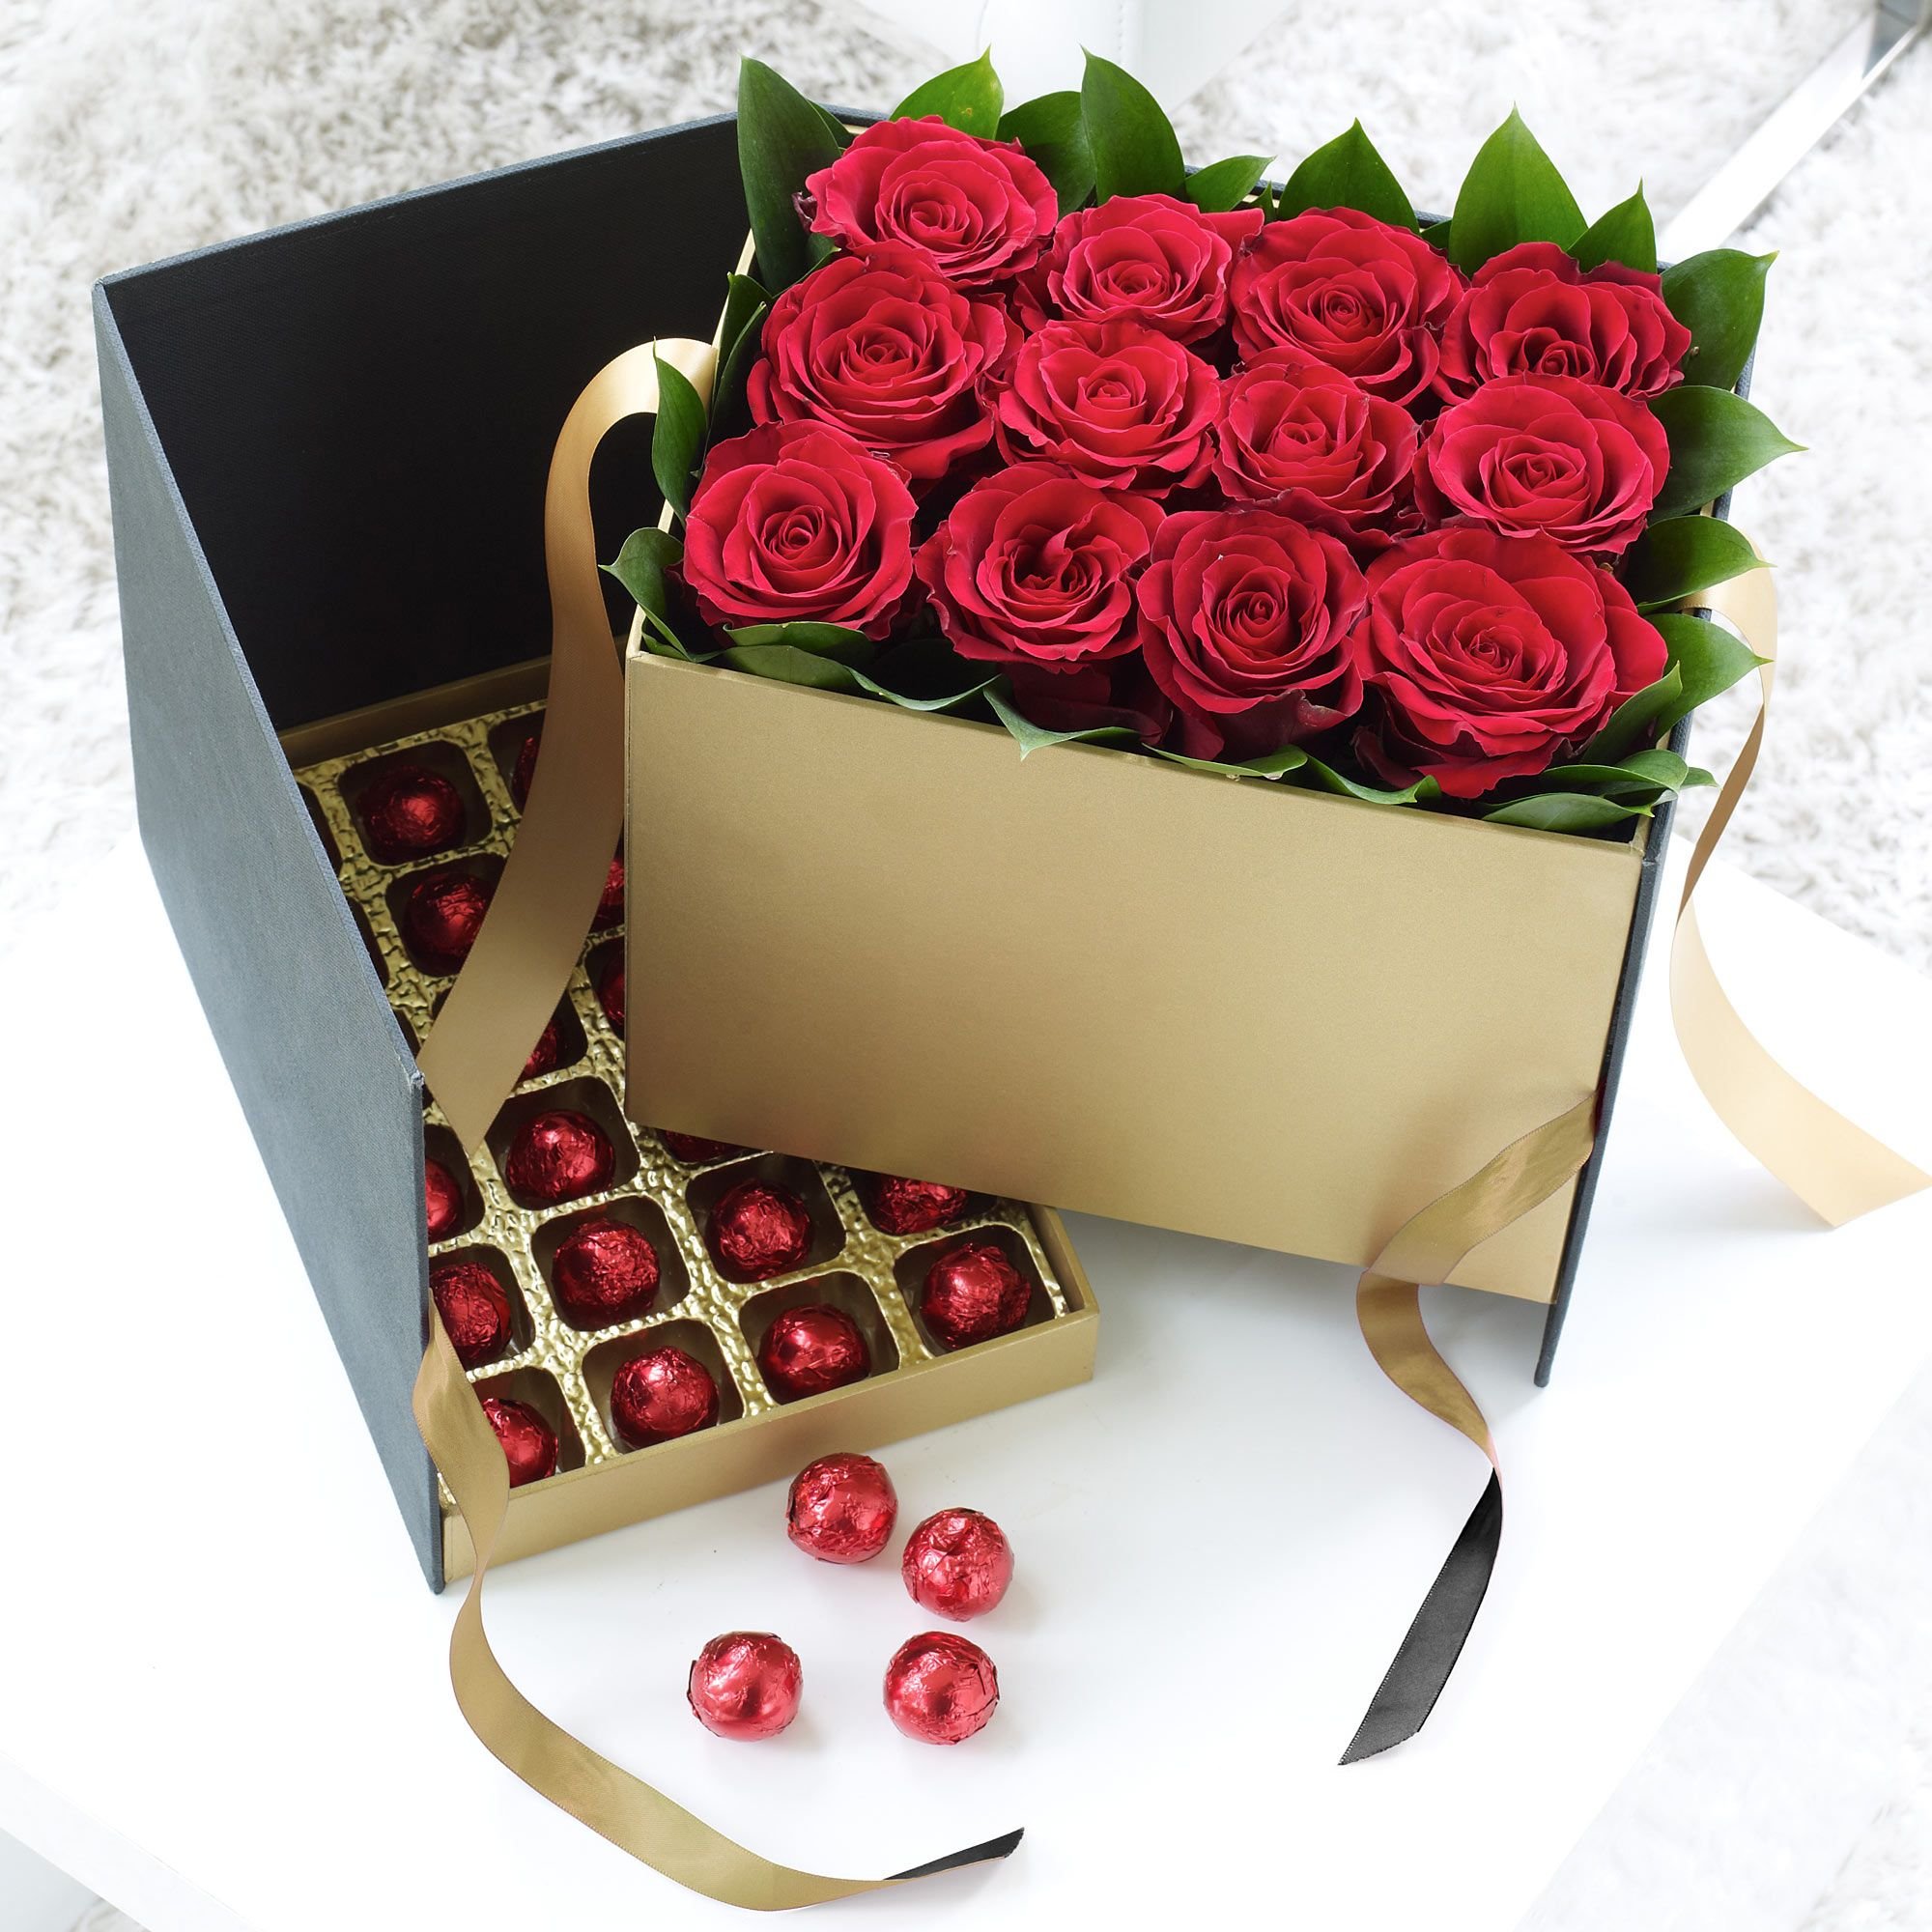 Красивый подарок женщине на день рождения. Розы в коробке. Цветы в подарок. Роскошные подарки для женщин. Красивый букет цветов в коробке.